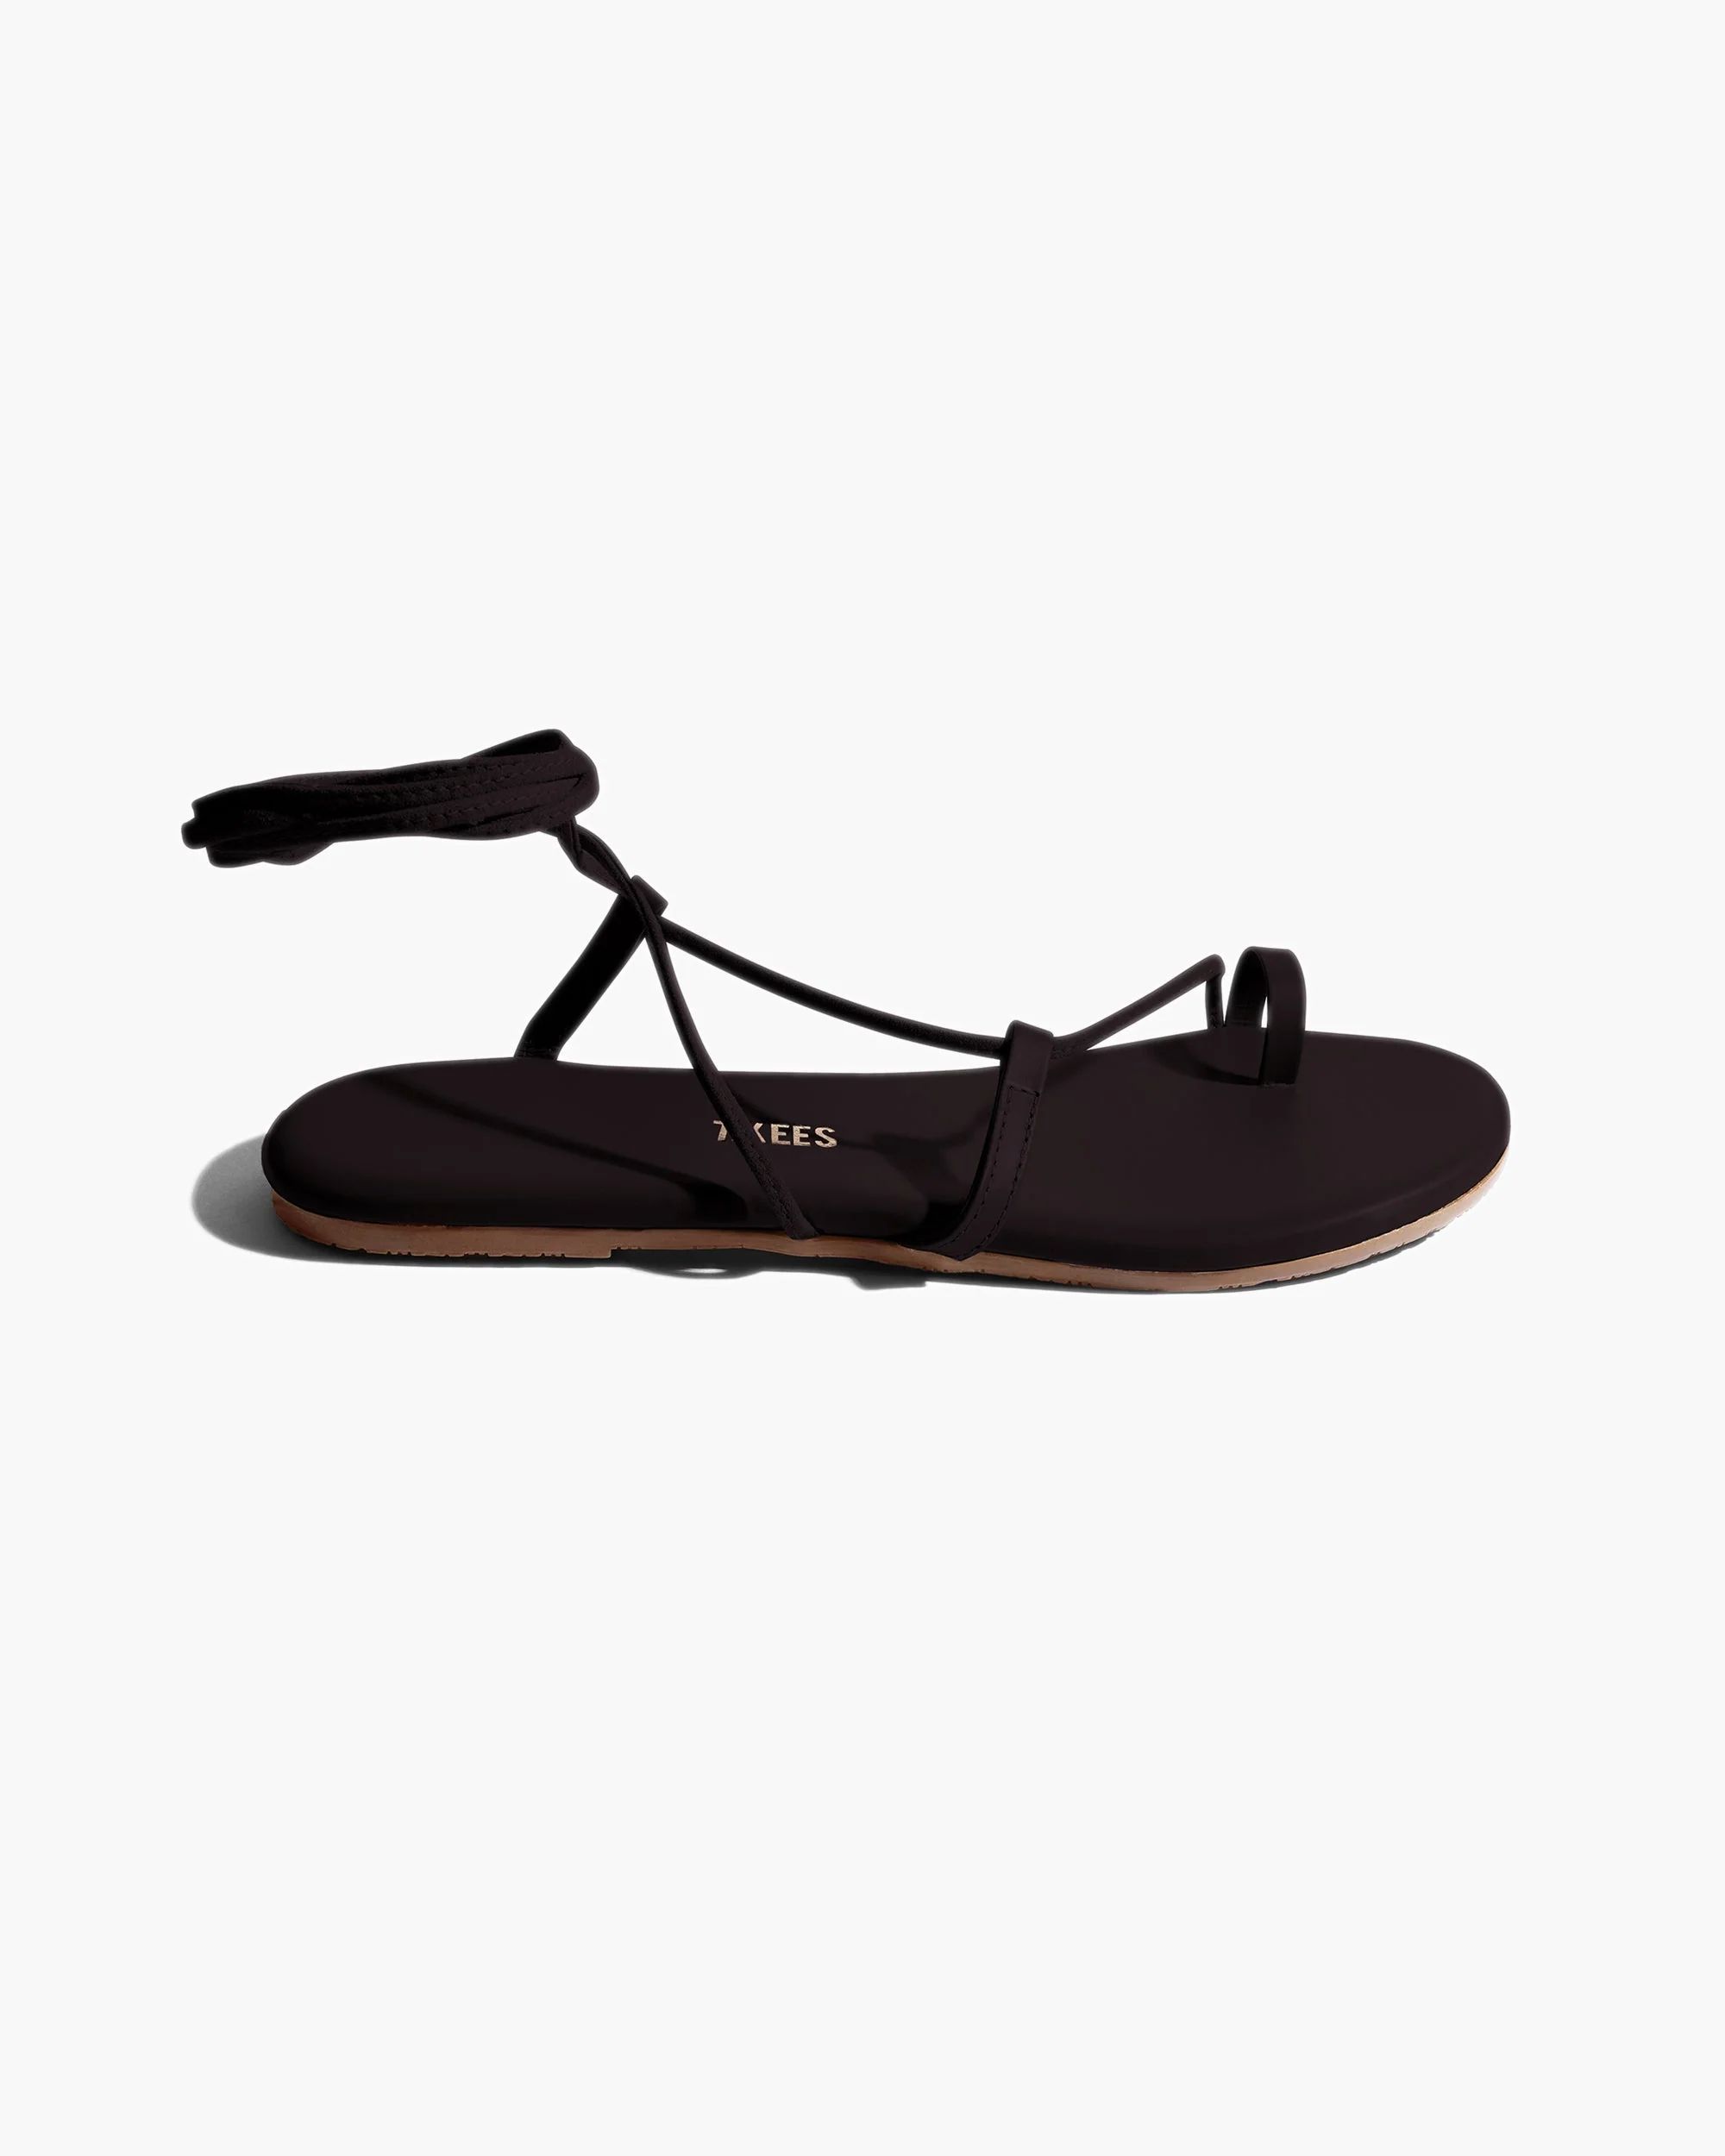 Jo in Black | Sandals | Women's Footwear | TKEES